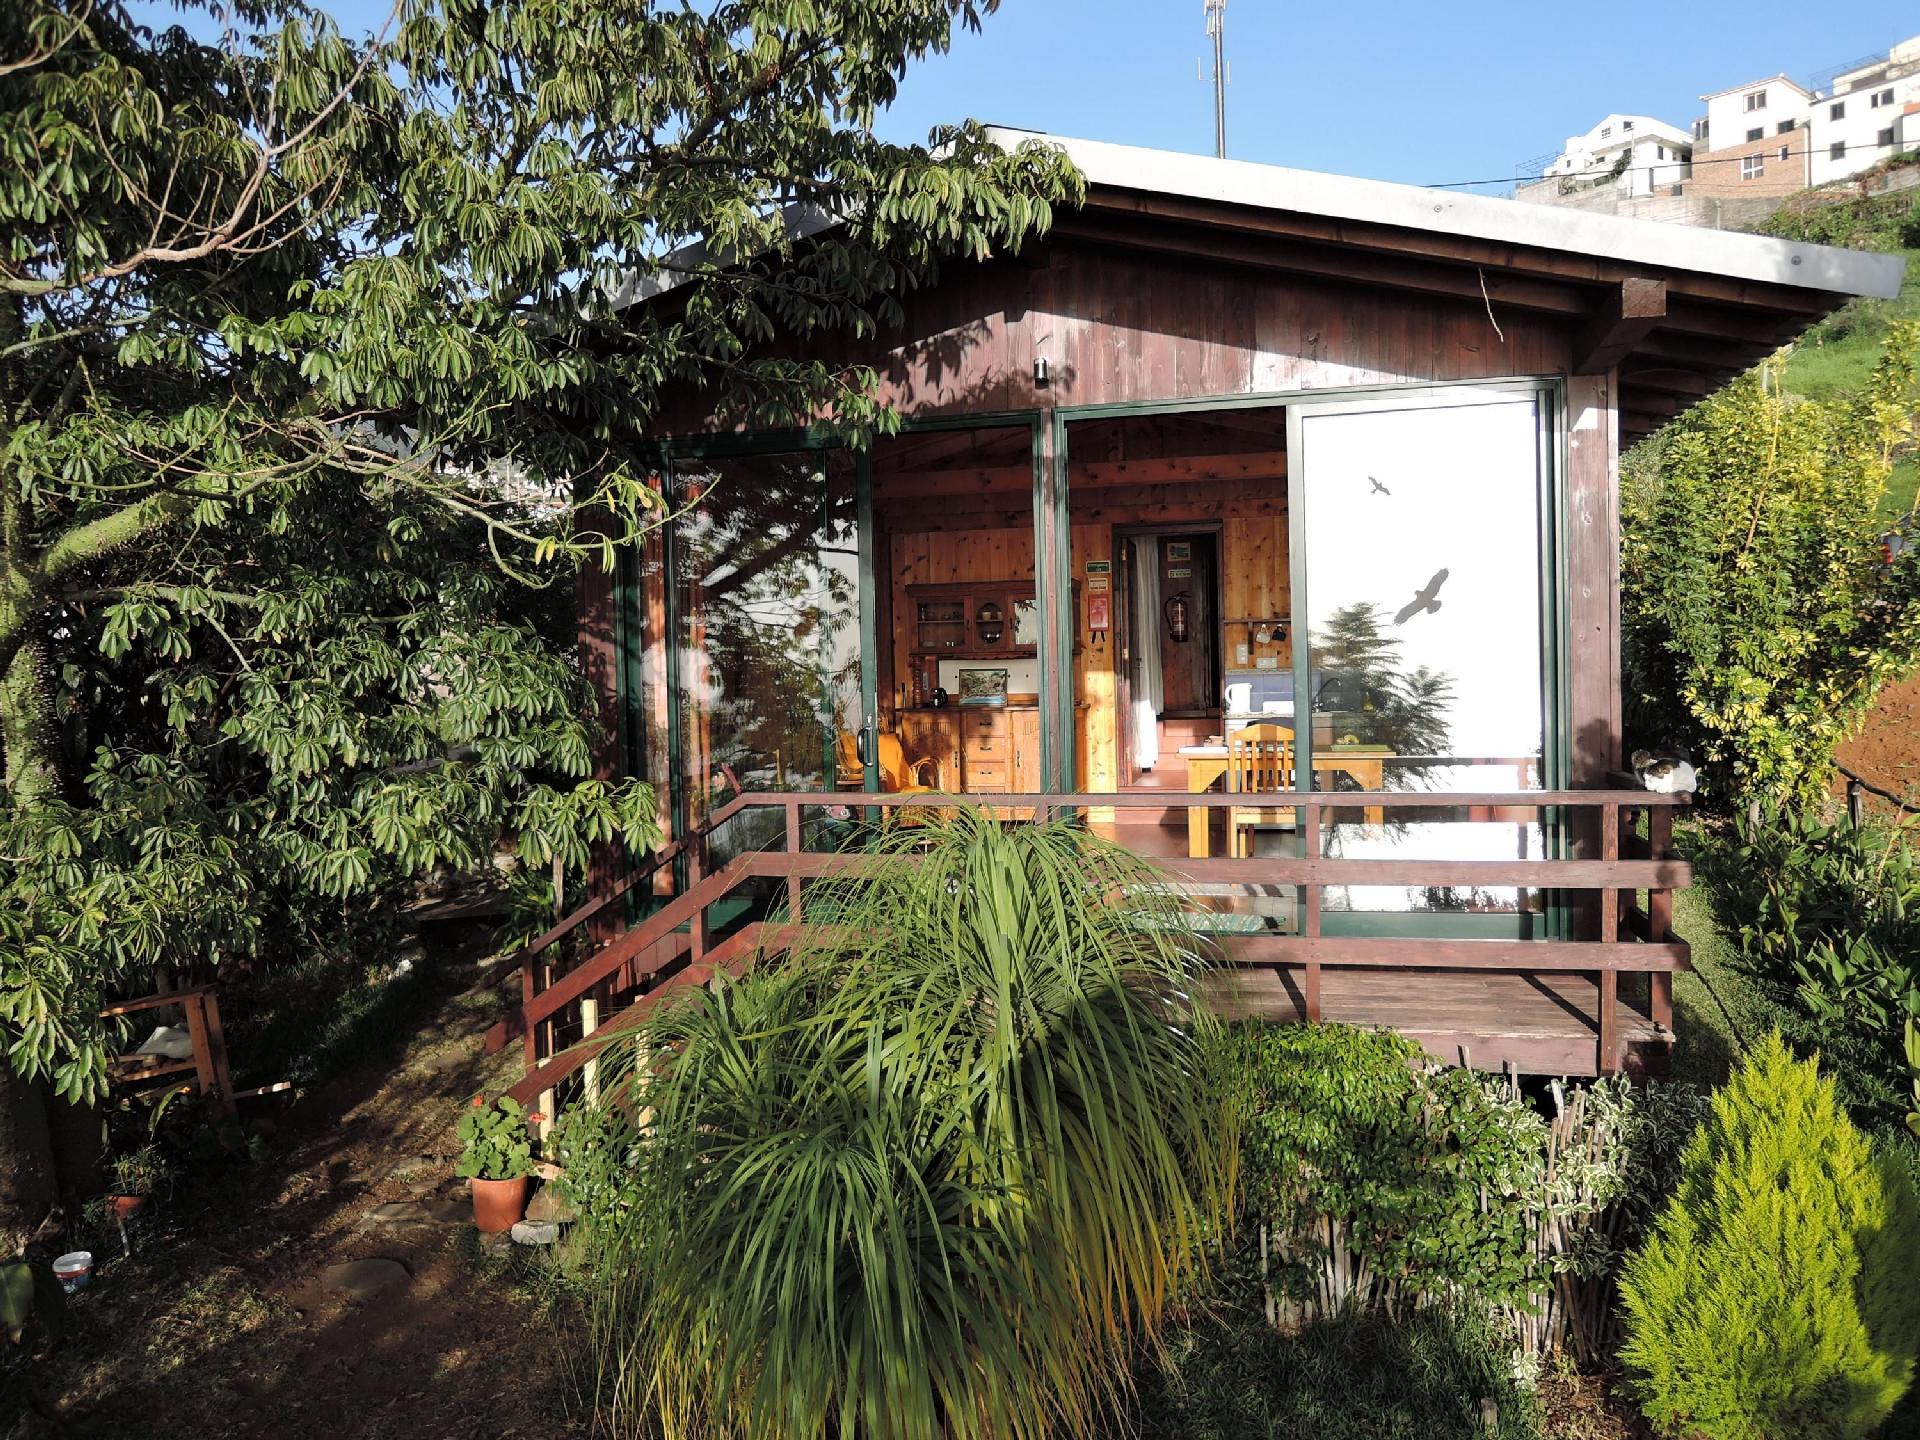 Ferienhaus in Canhas mit Schönem Garten Ferienhaus auf Madeira